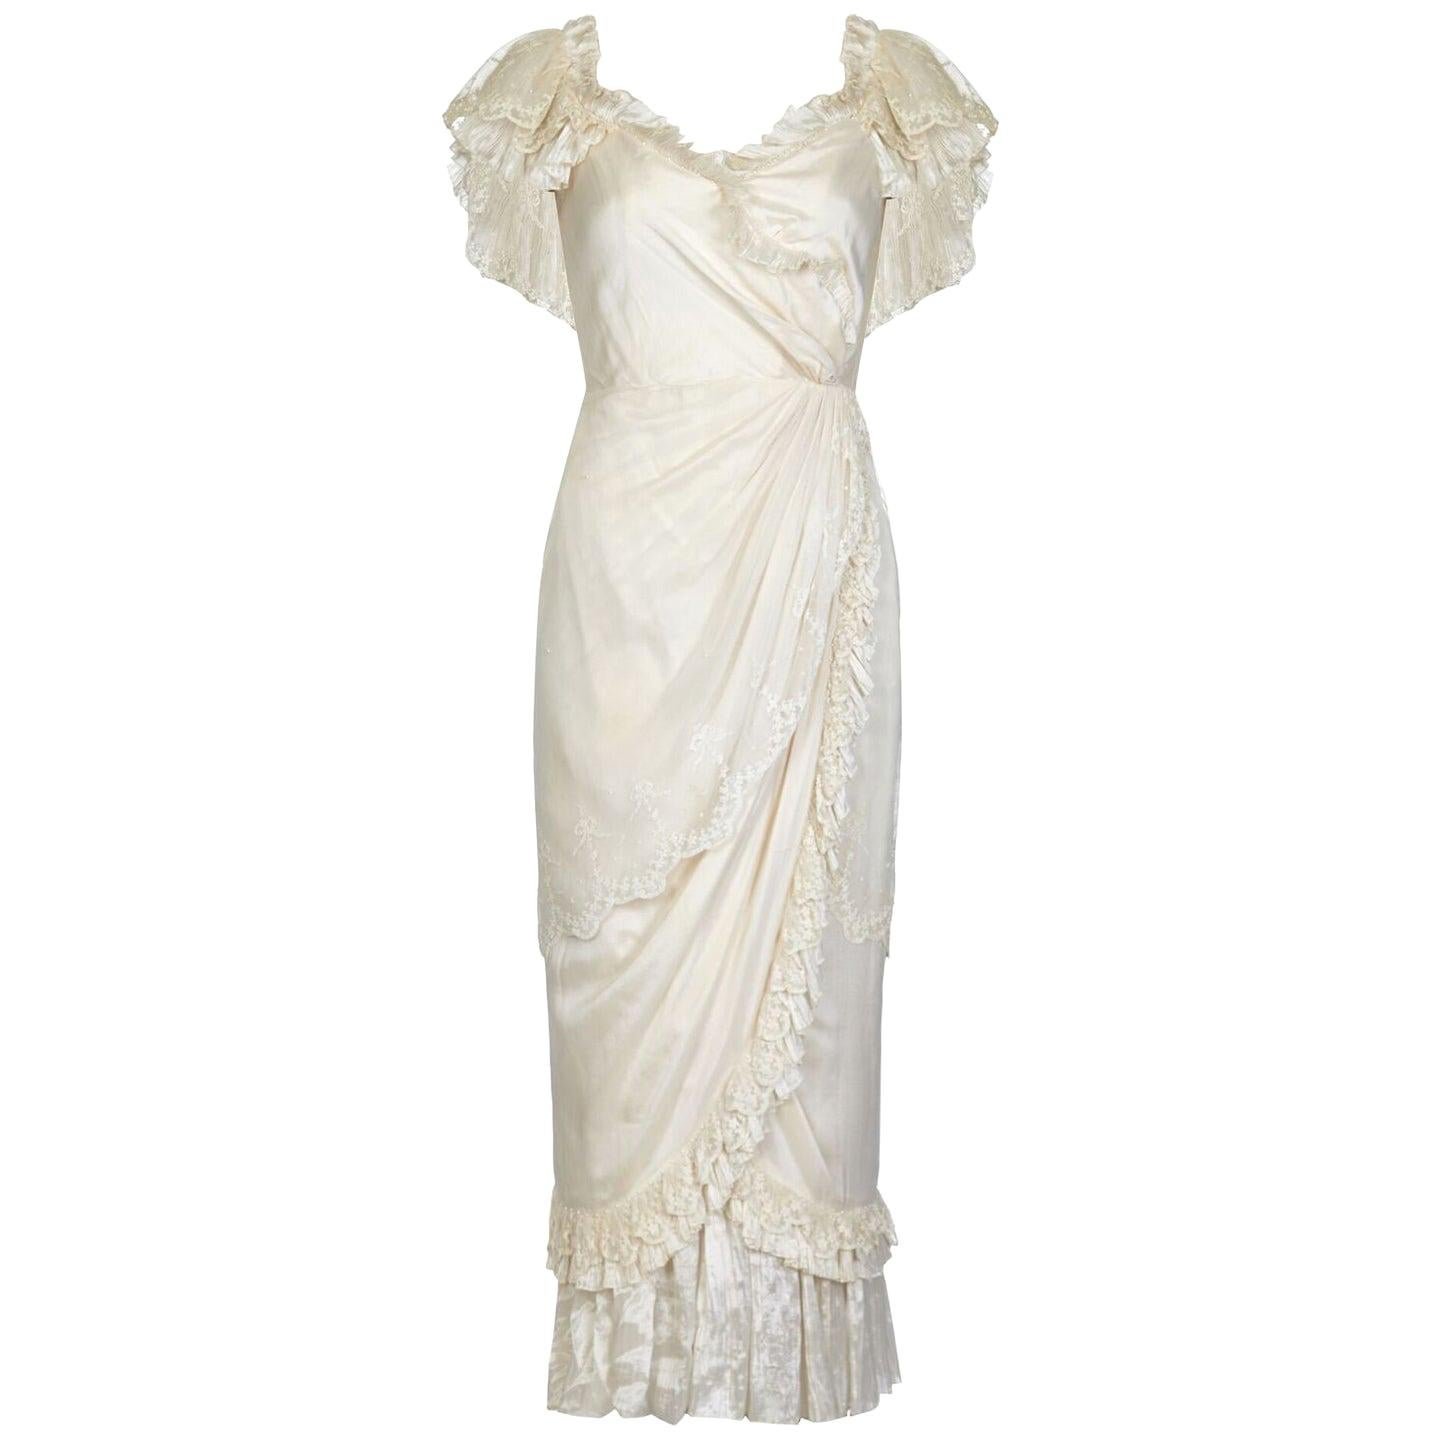 Cette exquise robe de mariée fantaisie Andrea Wilkin des années 1970 en ivoire doux respire la féminité et est en merveilleux état. Les couches de tissu en soie sont joliment agencées pour créer un look classique et romantique qui rappelle l'époque